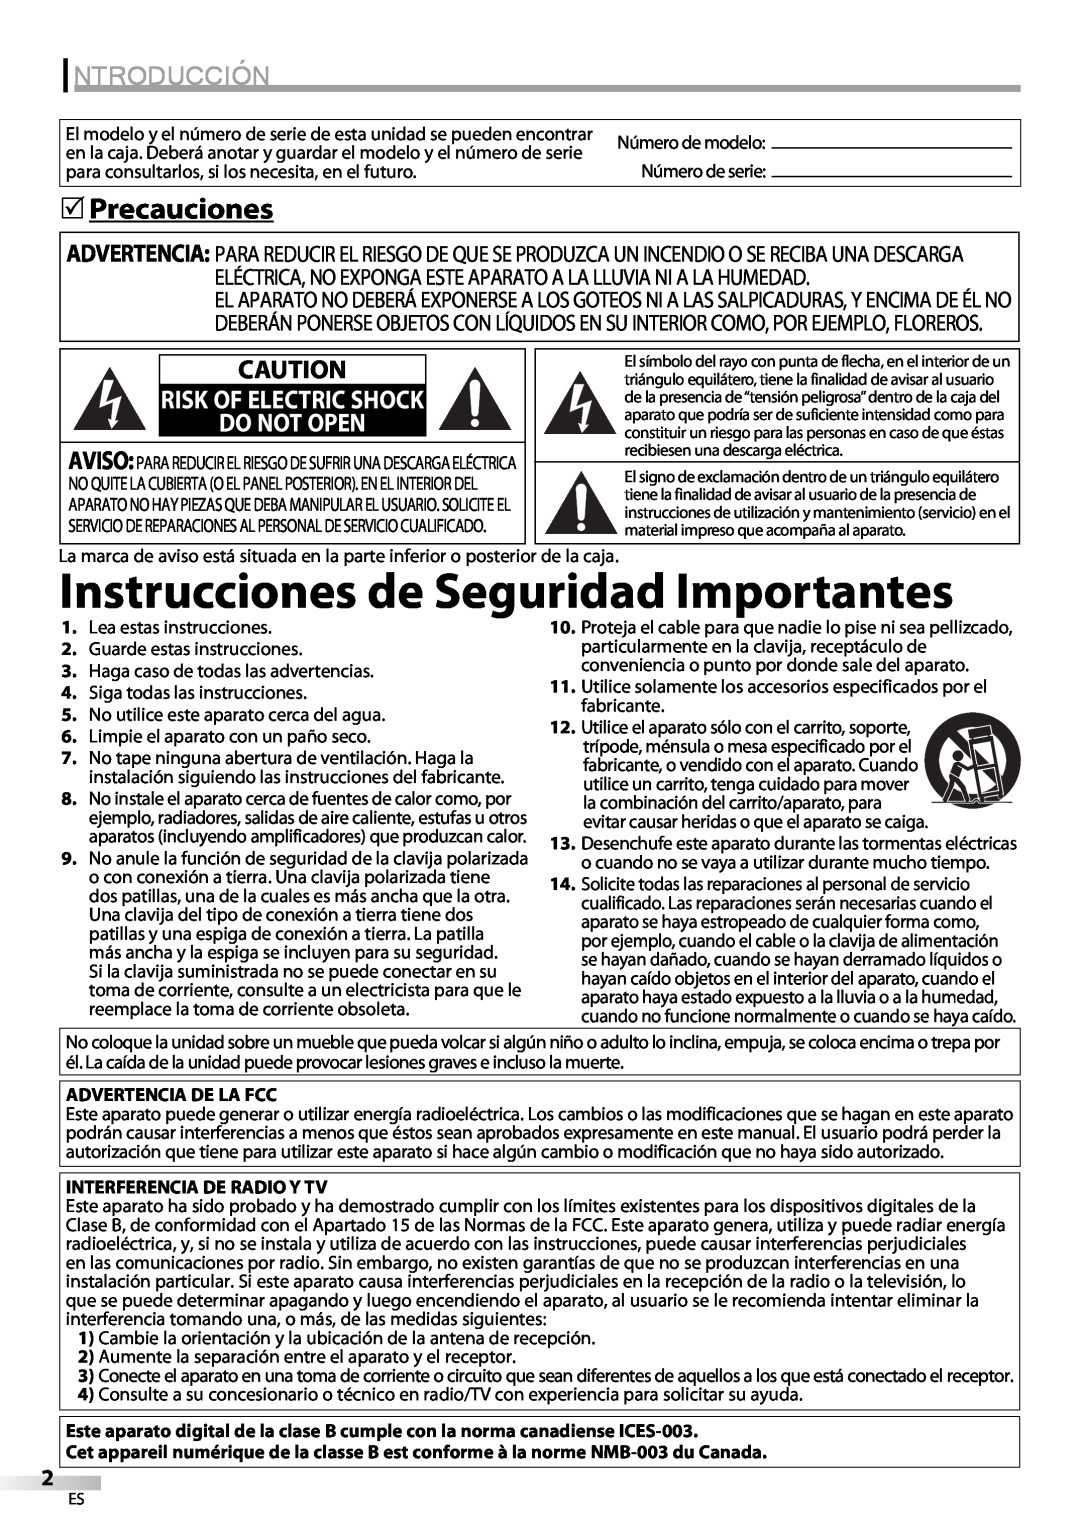 Sylvania LC370SS9 Instrucciones de Seguridad Importantes, Introducción, Precauciones, Do Not Open, Risk Of Electric Shock 